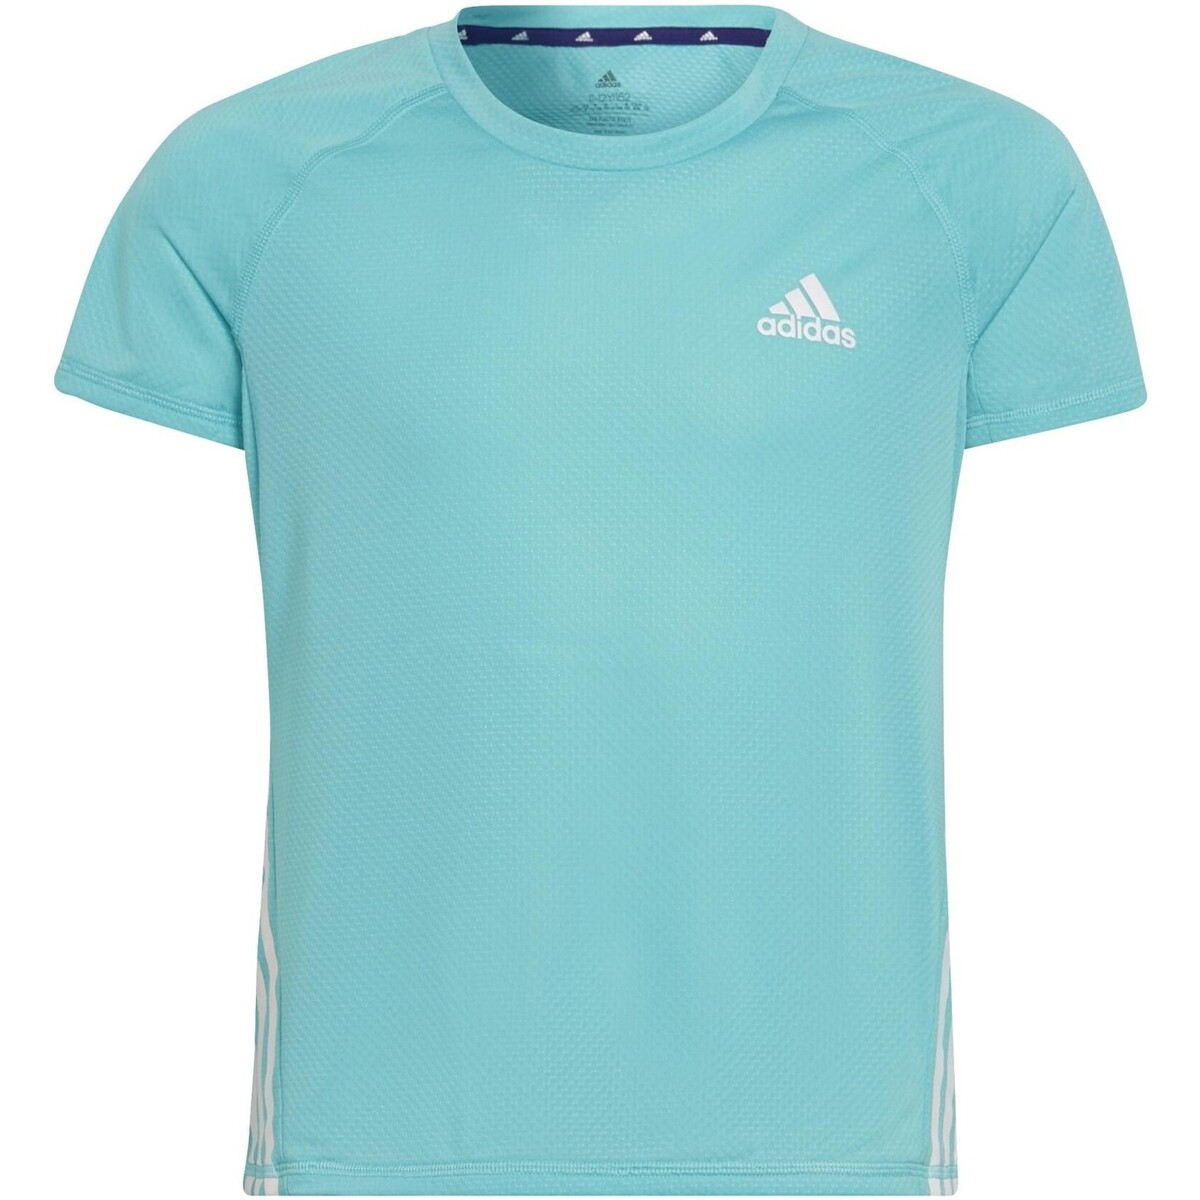 adidas Originals Autres Junior - Tee-shirt manches courtes - turquoise RwPOQcVt